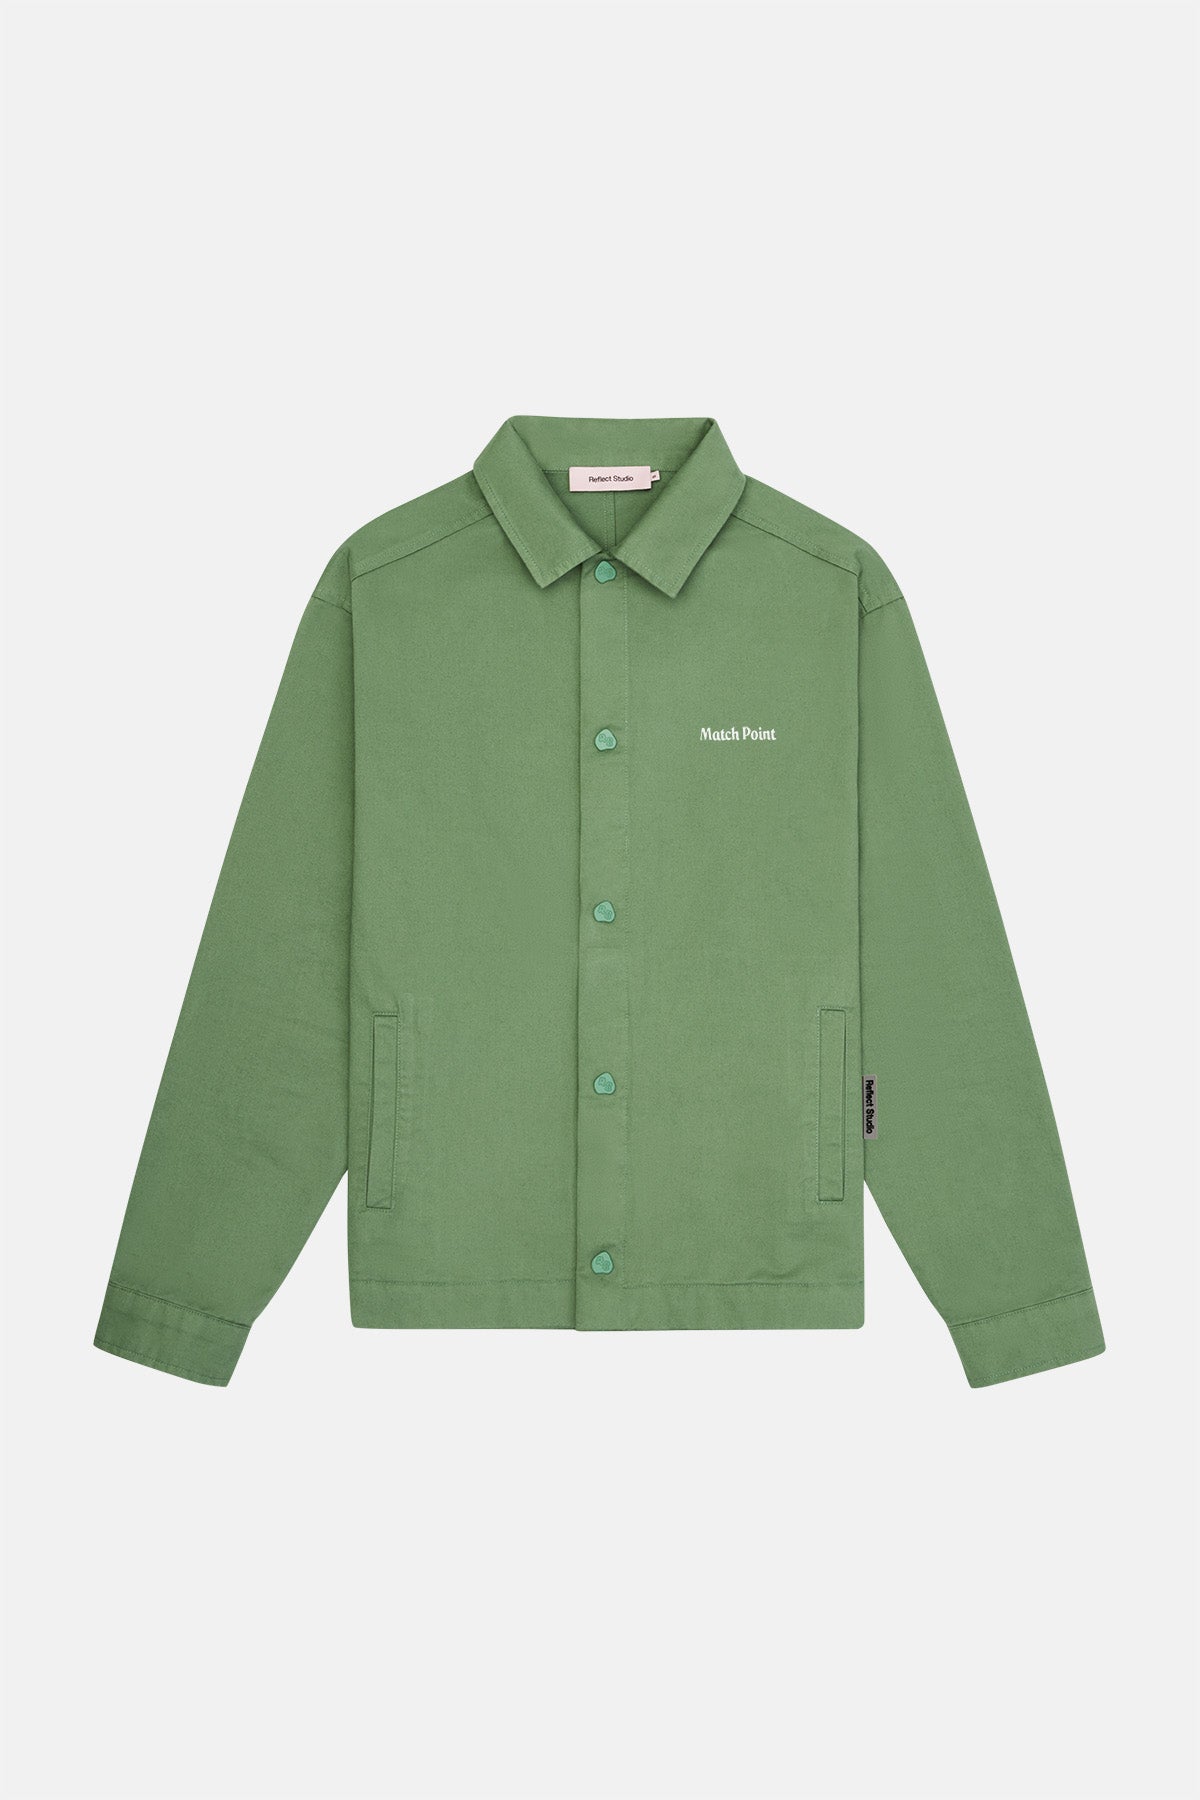 Match Point İnce Ceket - Yeşil